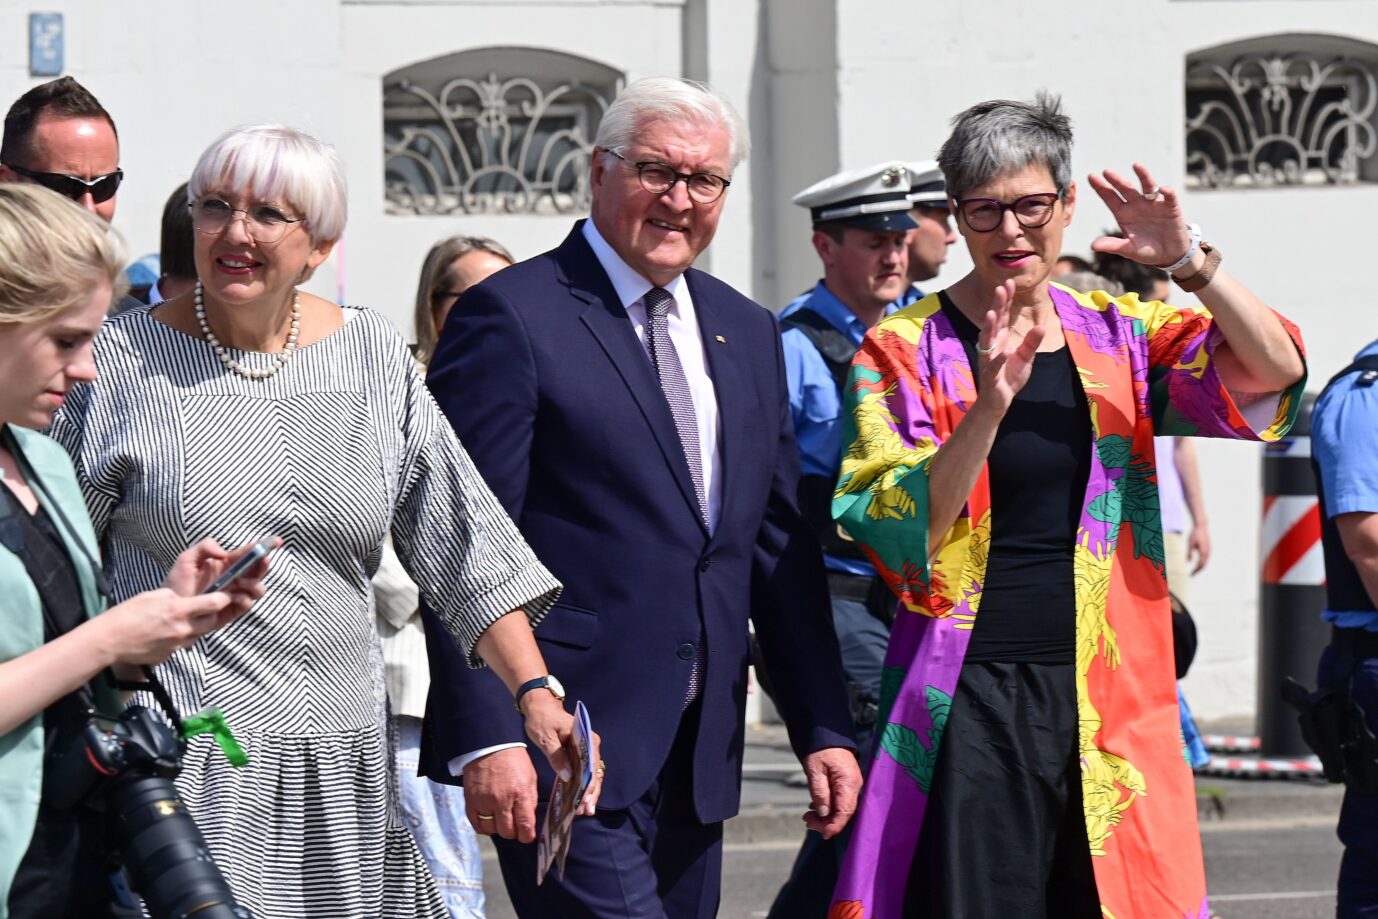 Kultur-Staatsministerin Claudia Roth (links) mit Documenta-Chefin Sabine Schormann (rechts) bei der Ausstellungs-Eröffnung mit Bundespräsident Frank-Walter Steinmeier.